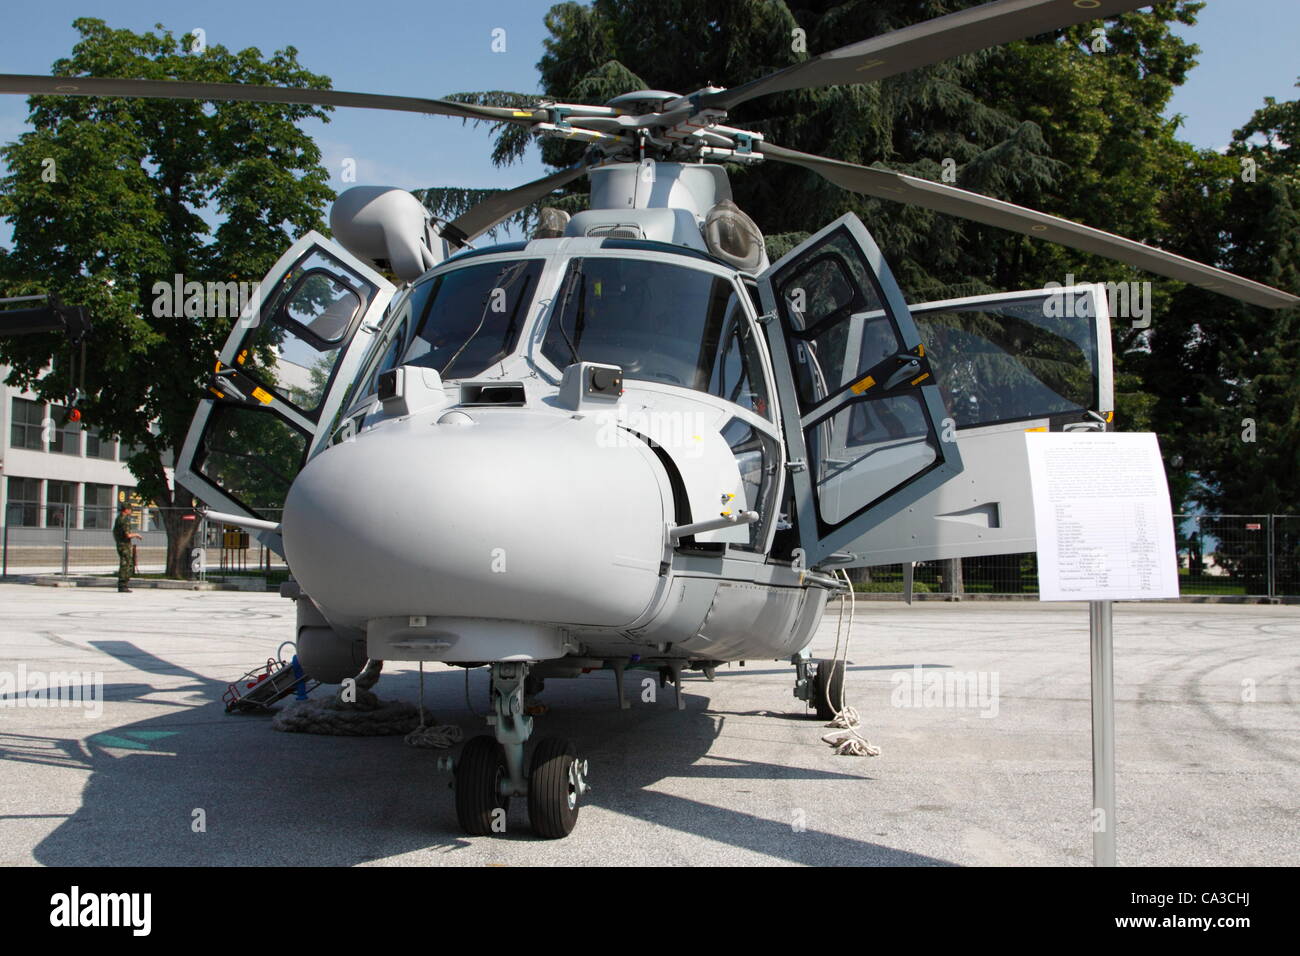 Eurocopter Panther de la Marine bulgare sur l'affichage à l'Hemus 2012 Exposition de l'industrie de la défense. La Bulgarie n'a que trois panthères après l'accord d'origine devait être réduit de moitié pour des raisons financières l'été dernier. Plovdiv, Bulgarie, 31/05/2012 Banque D'Images